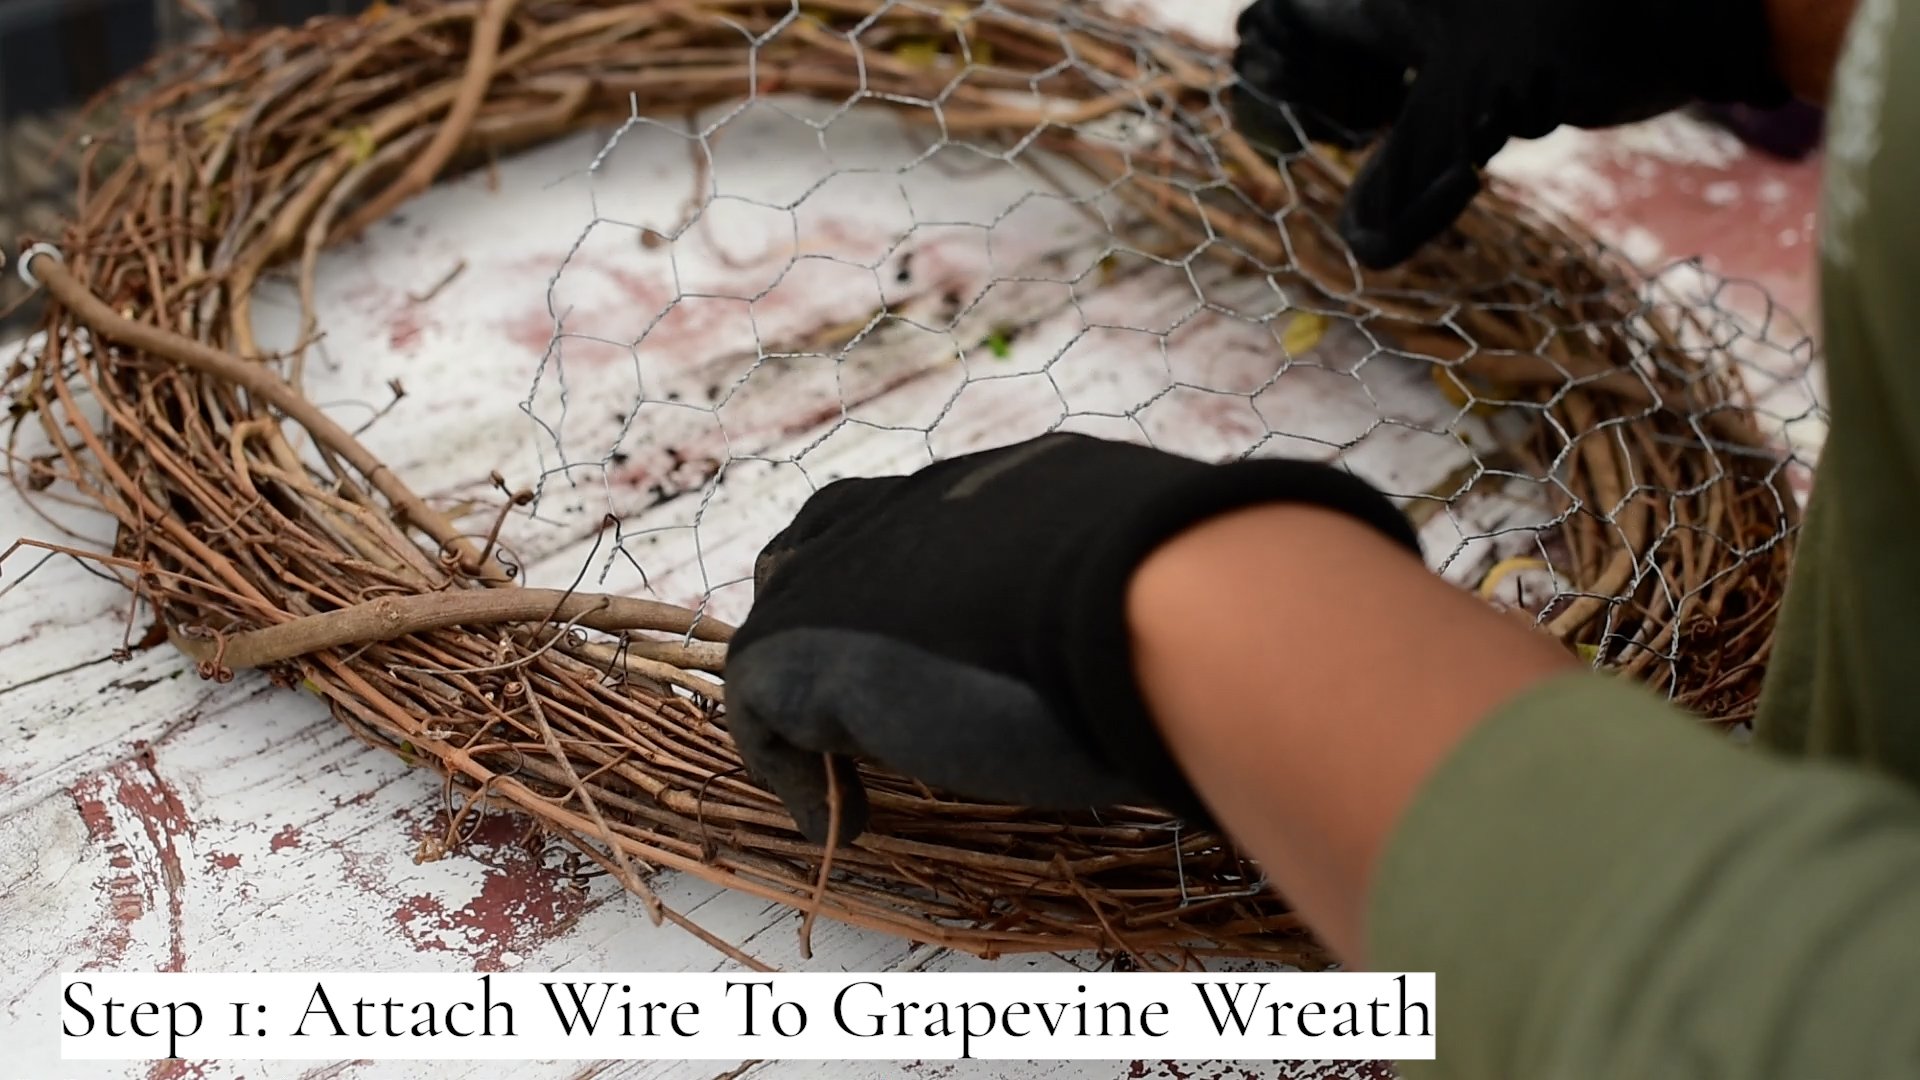 Grapvine Wreath Wire Attatching.jpg